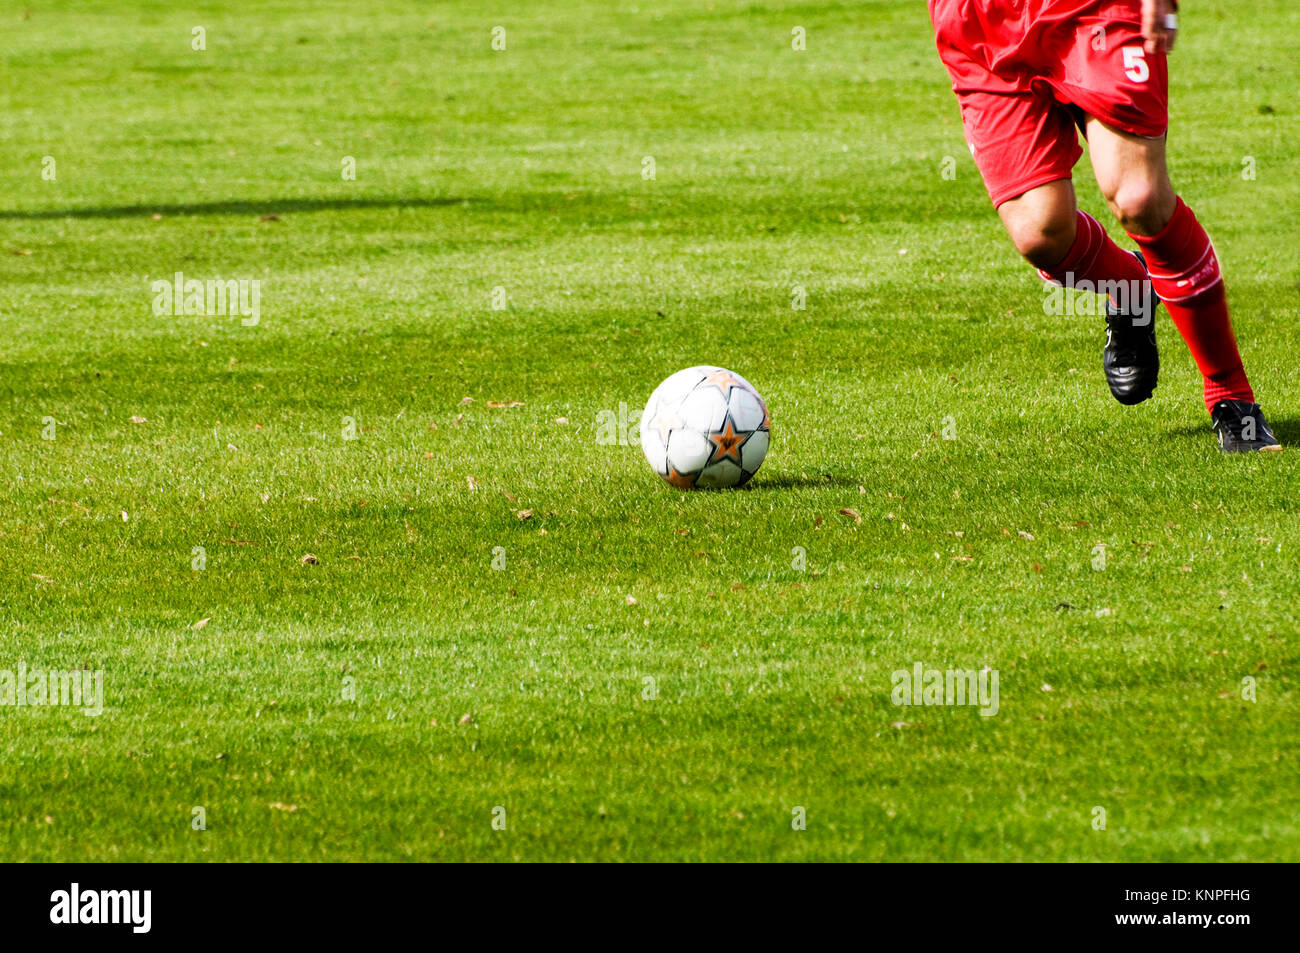 Les jambes d'un joueur de football en robe rouge, en action au cours d'un jeu Banque D'Images